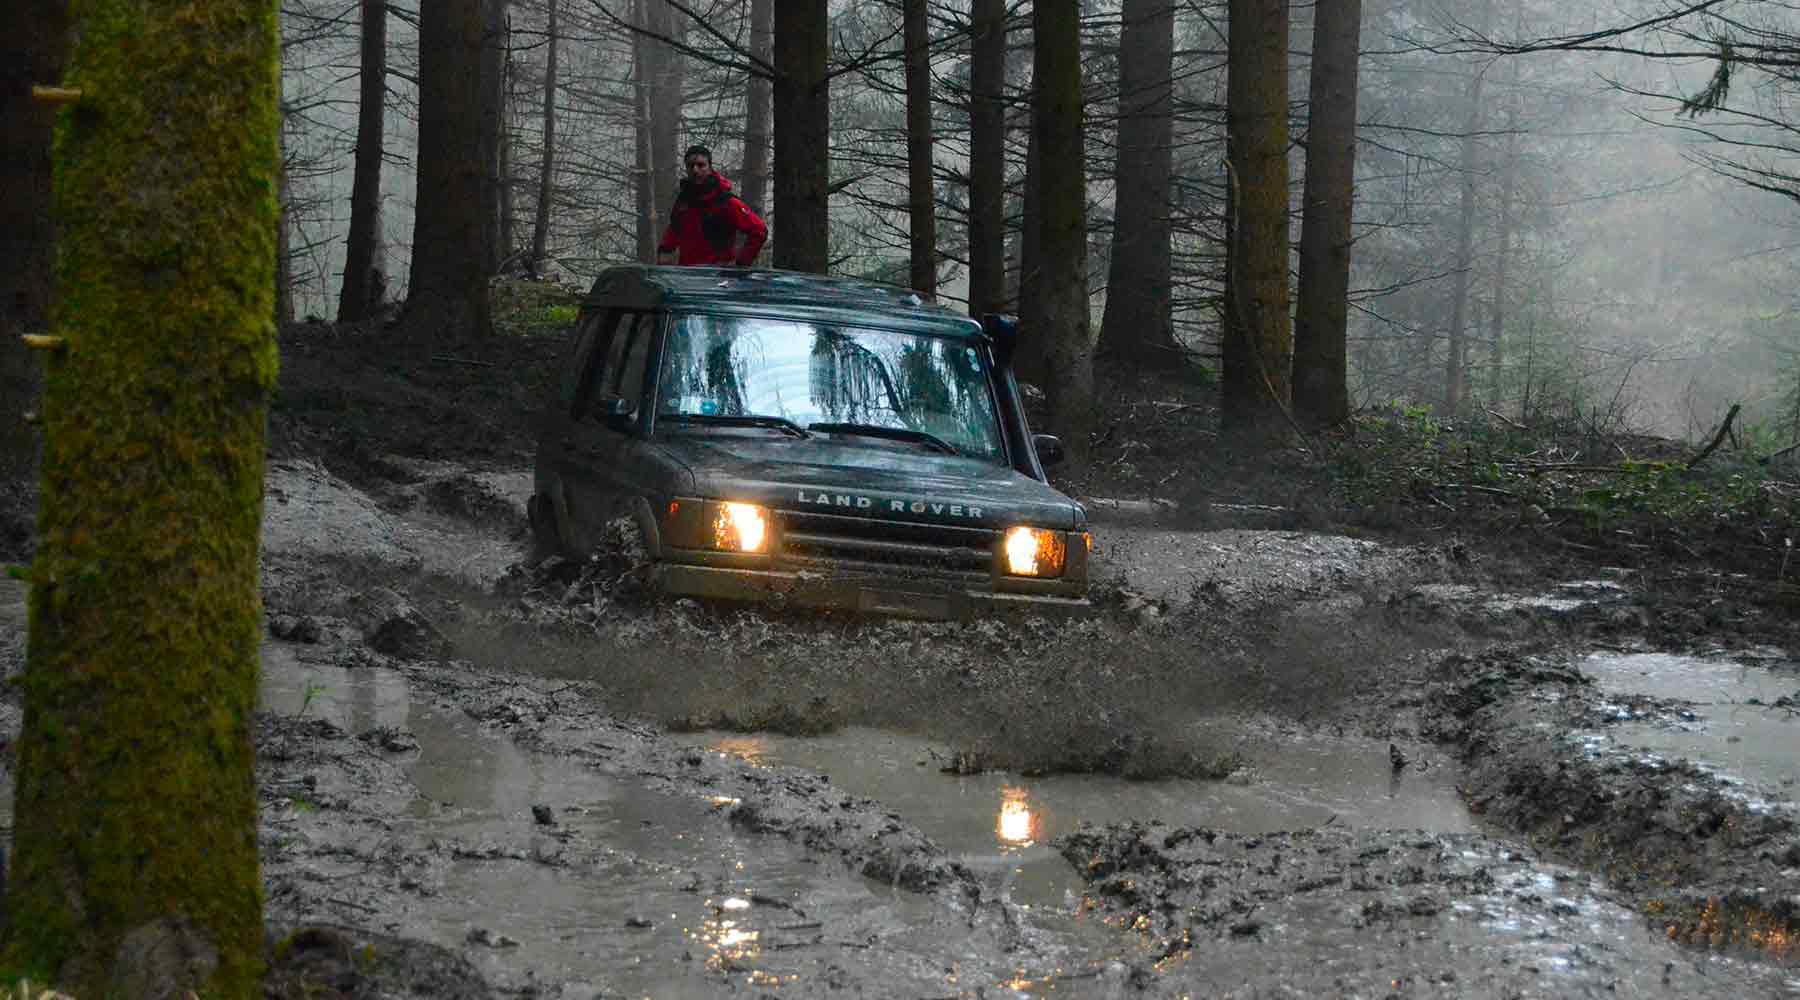 Land_Rover_Day_Toscana_2021_Land_Rover_Experience_Italia_Registro_Italiano_Land_Rover